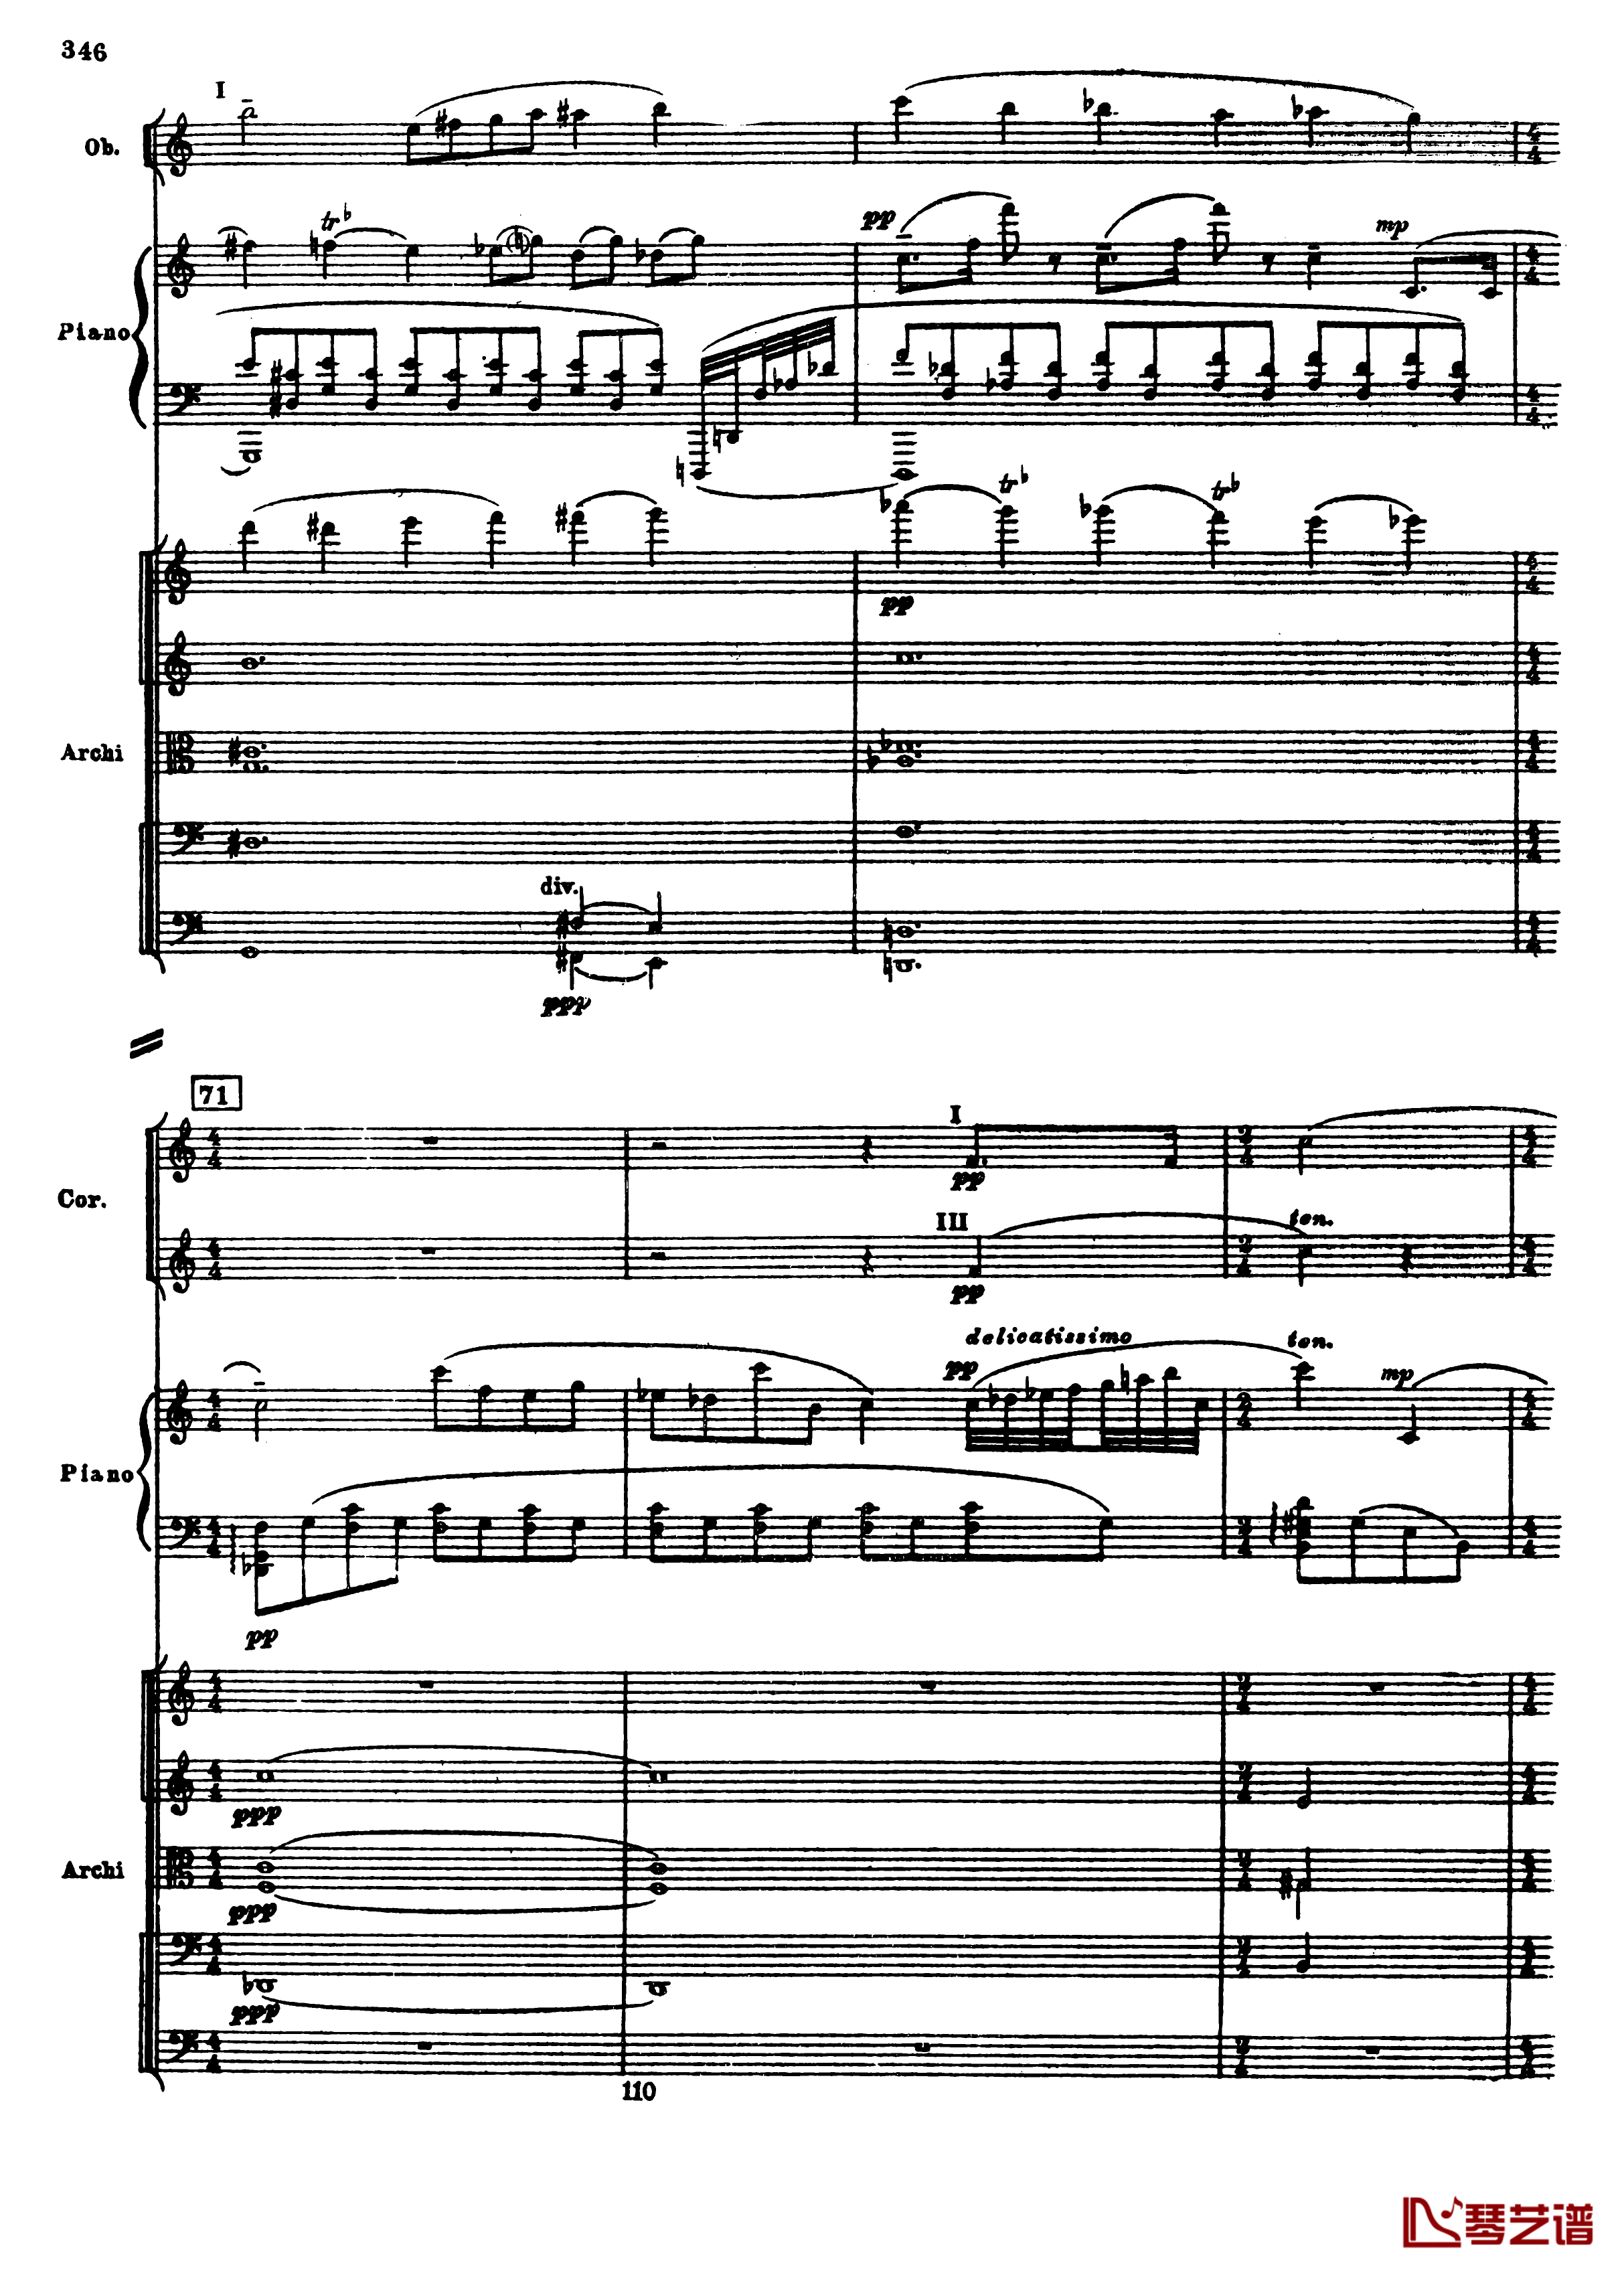 普罗科菲耶夫第三钢琴协奏曲钢琴谱-总谱-普罗科非耶夫78